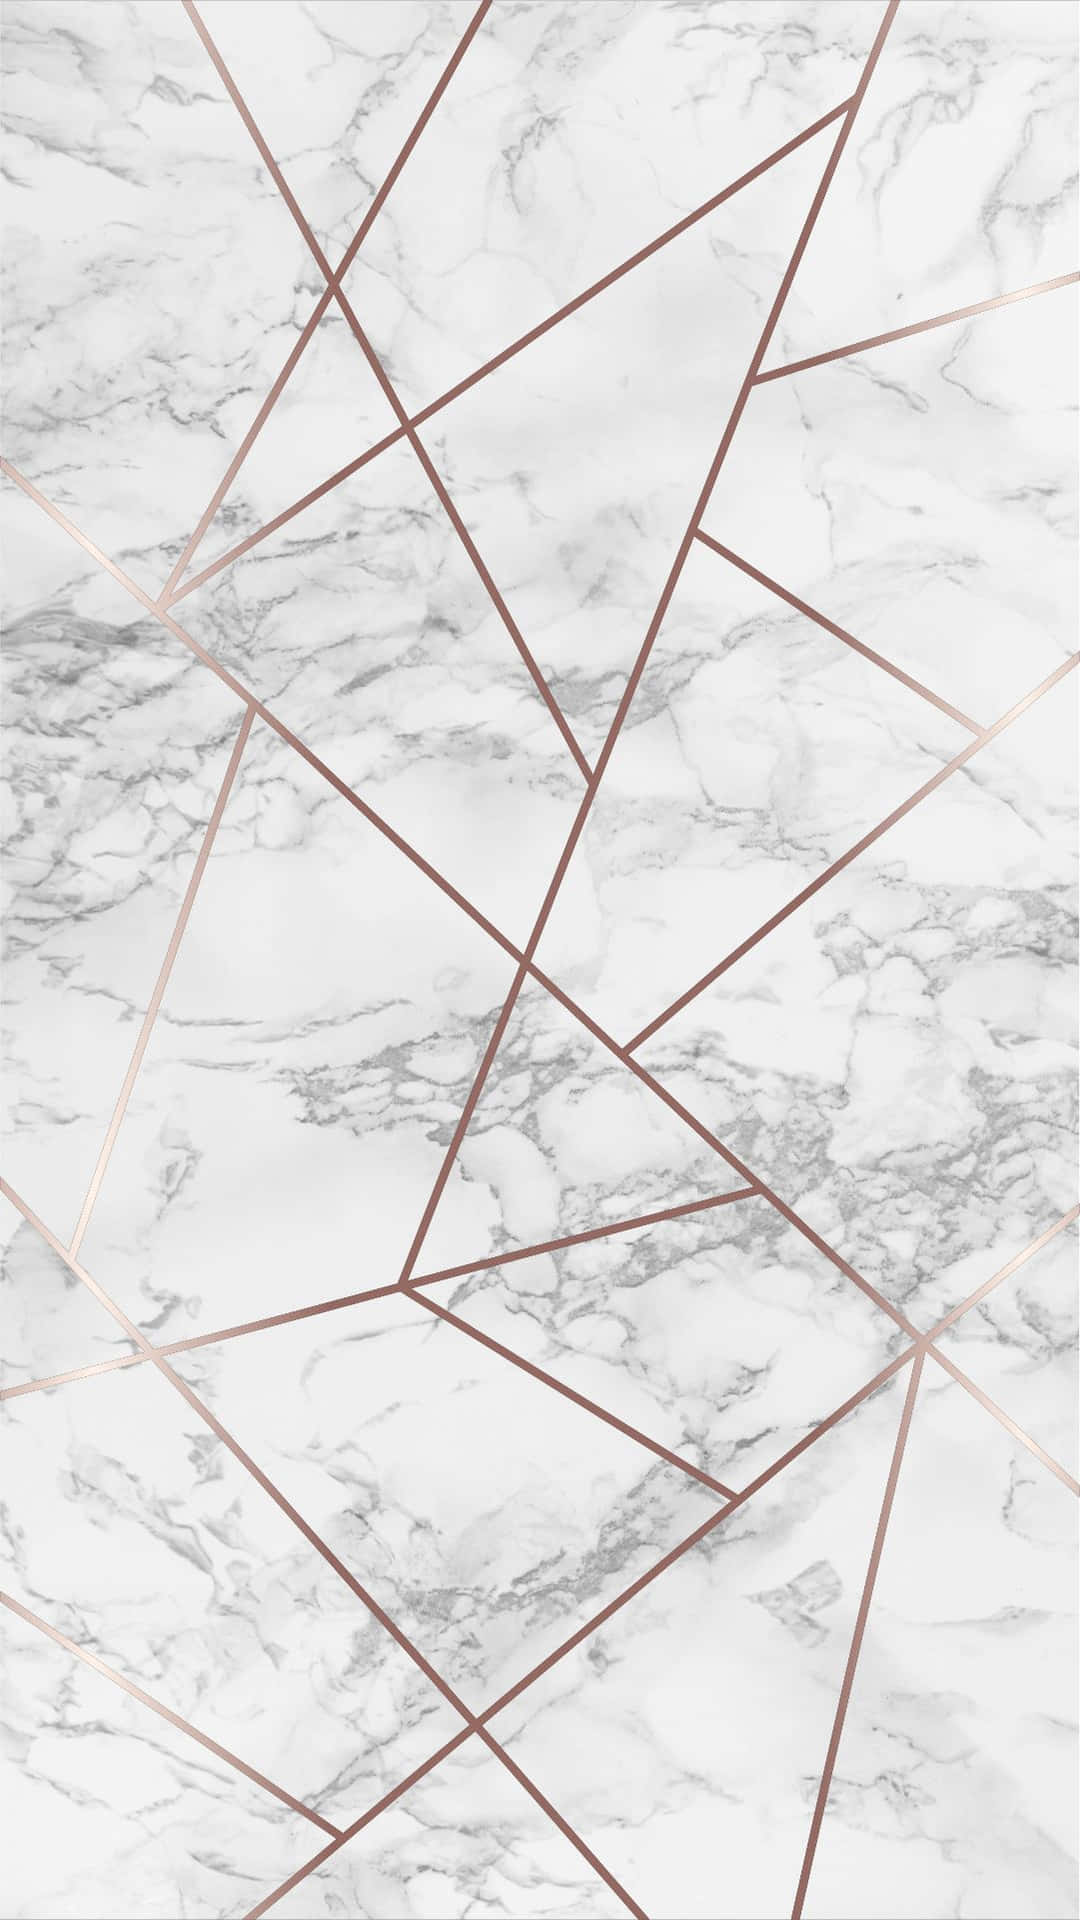 Eineweiße Marmor-tapete Mit Roségoldenen Linien Wallpaper